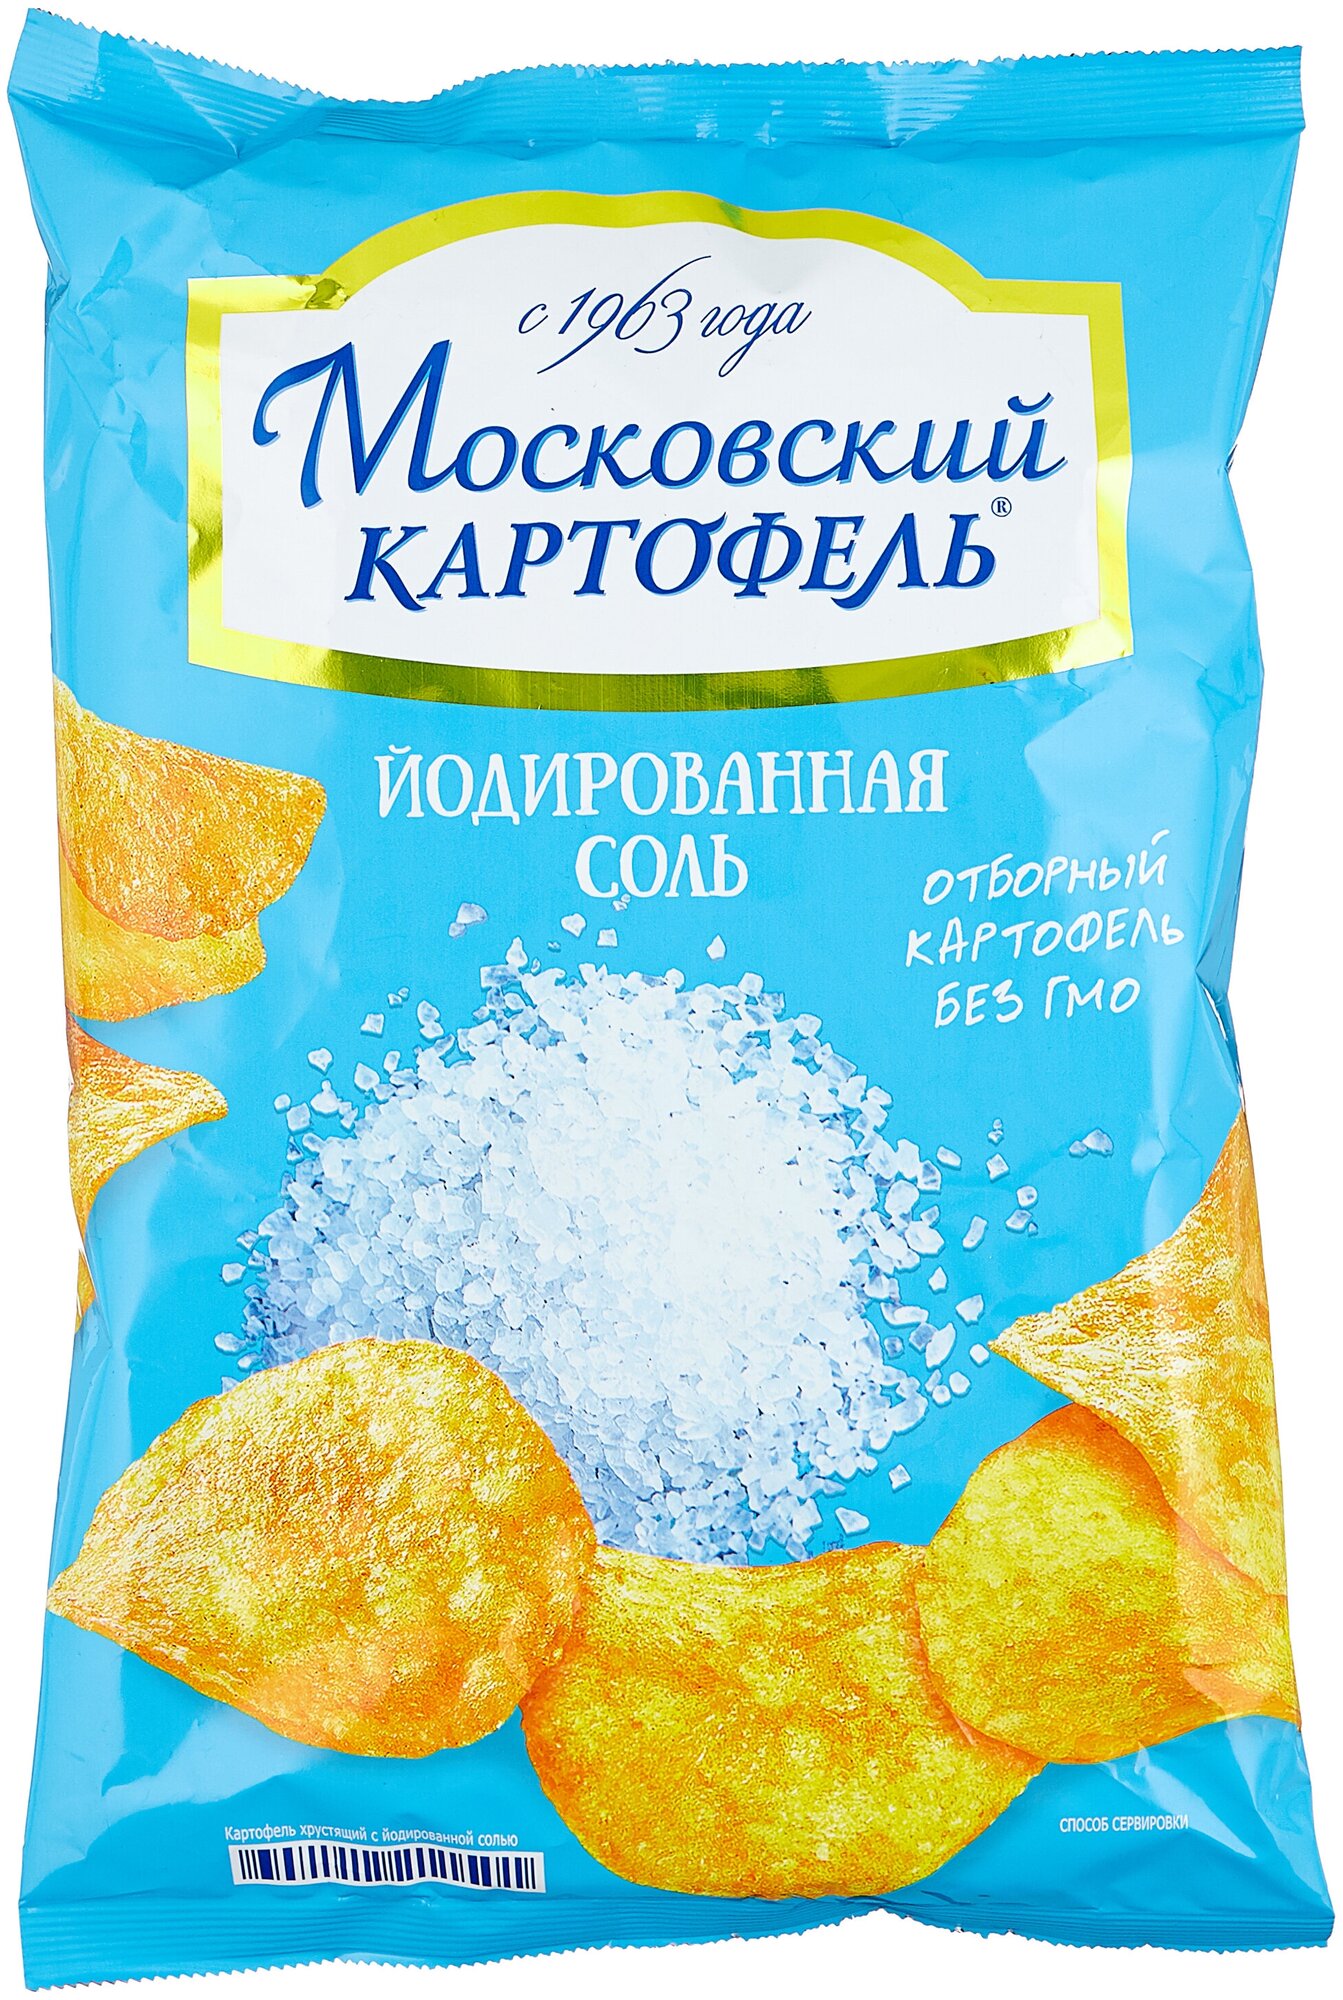 Картофельные чипсы Московский картофель с йодированной солью, 130 гр